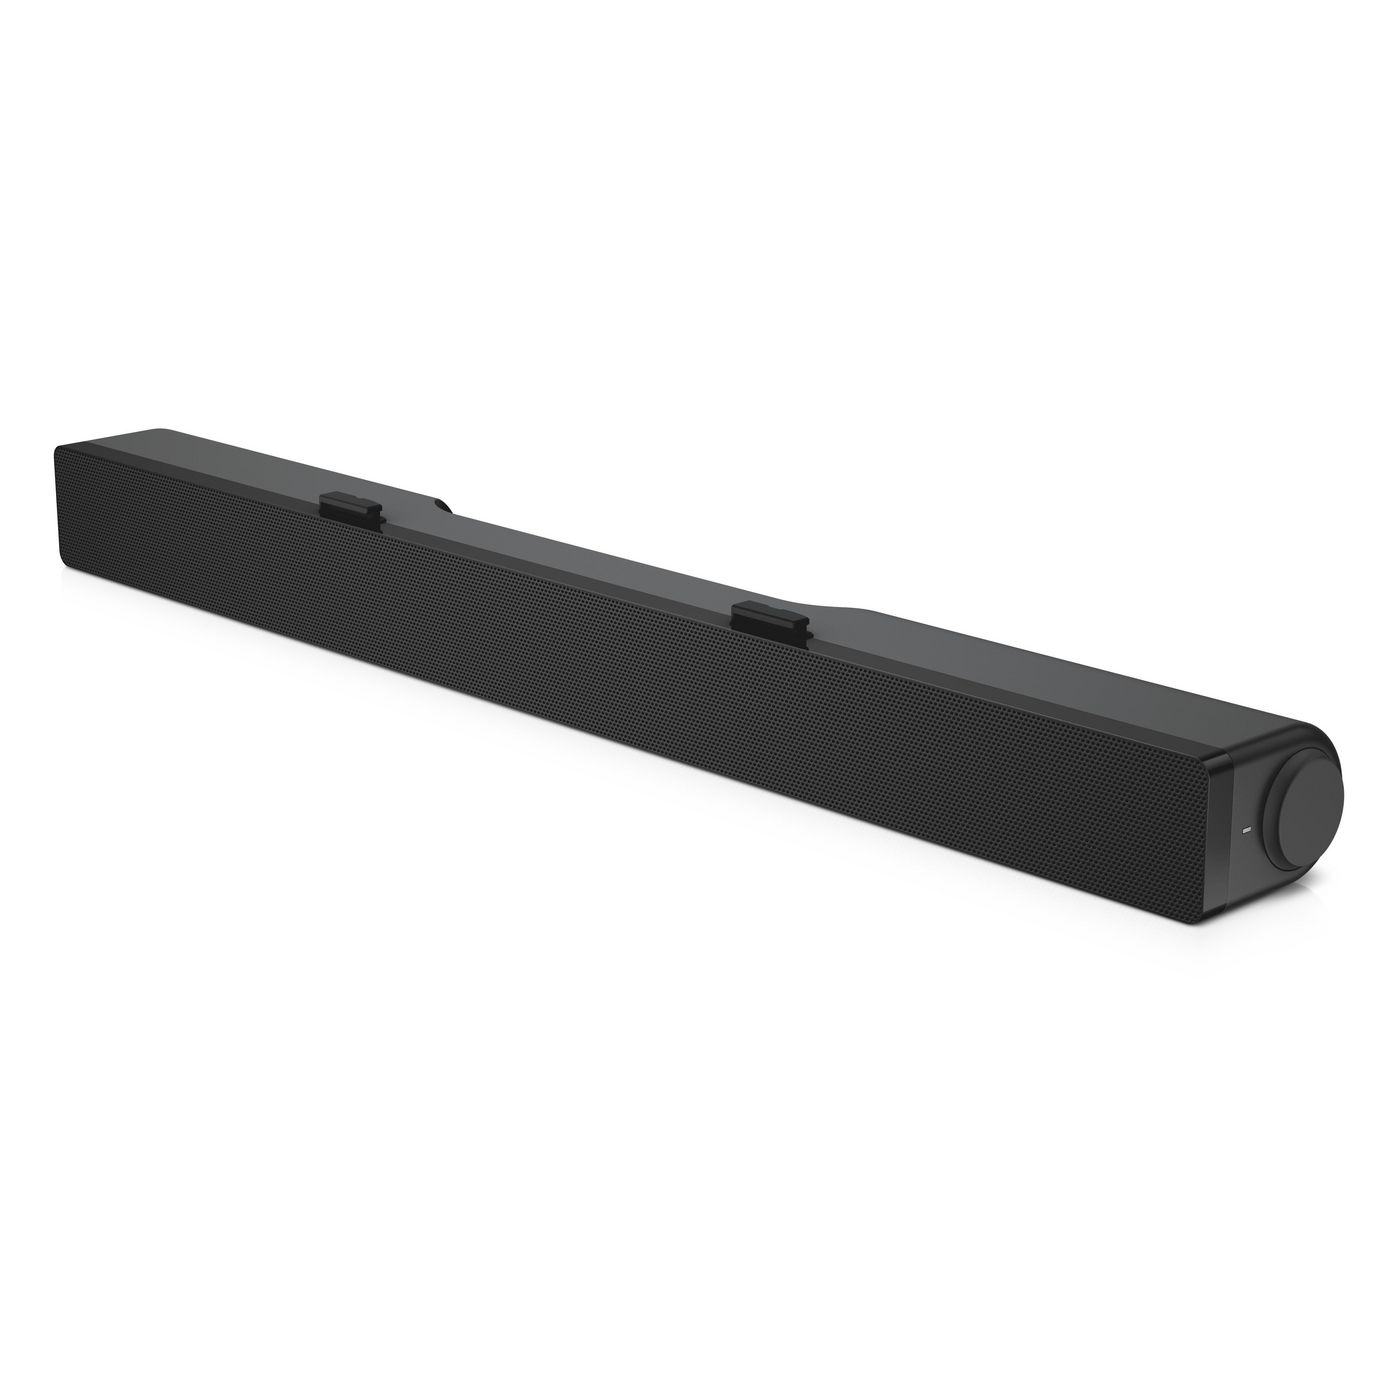 Sound Bar Ac511m Black 2.0 Channels 2.5 W